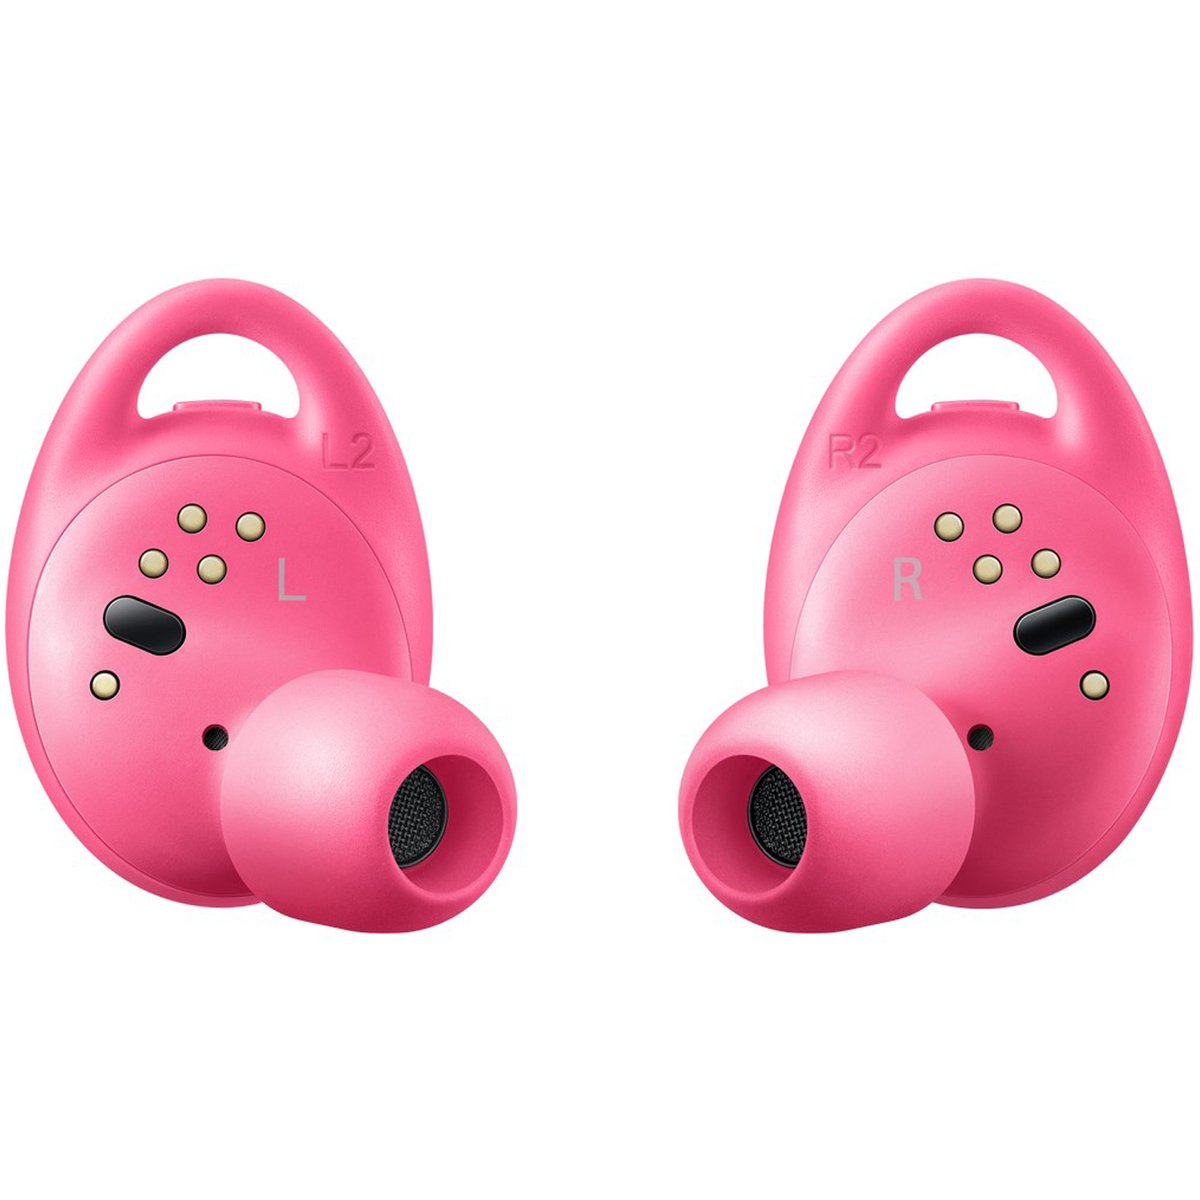 Samsung Gear IconX Earbuds R140 Pink